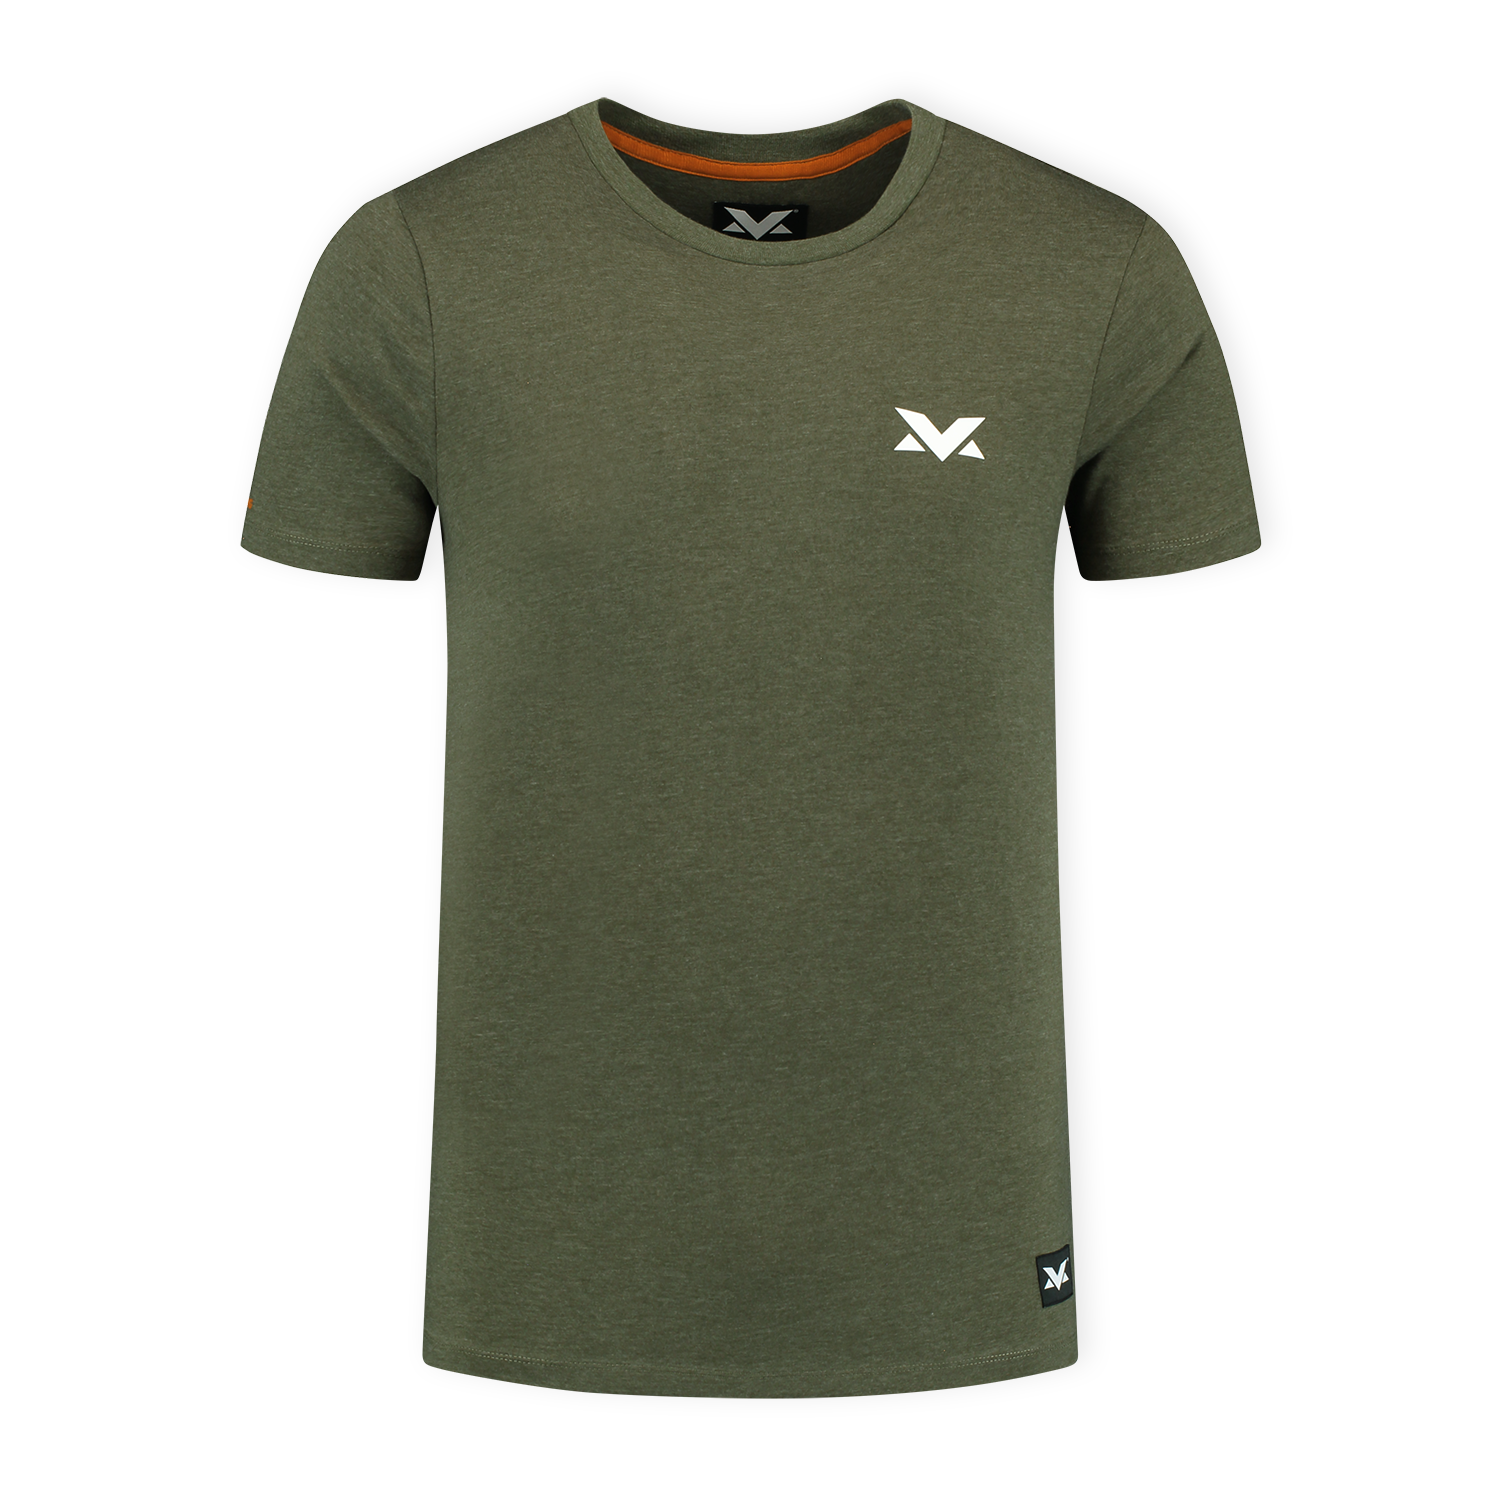 MV T-shirt The Limits - Groen - XXL - Max Verstappen